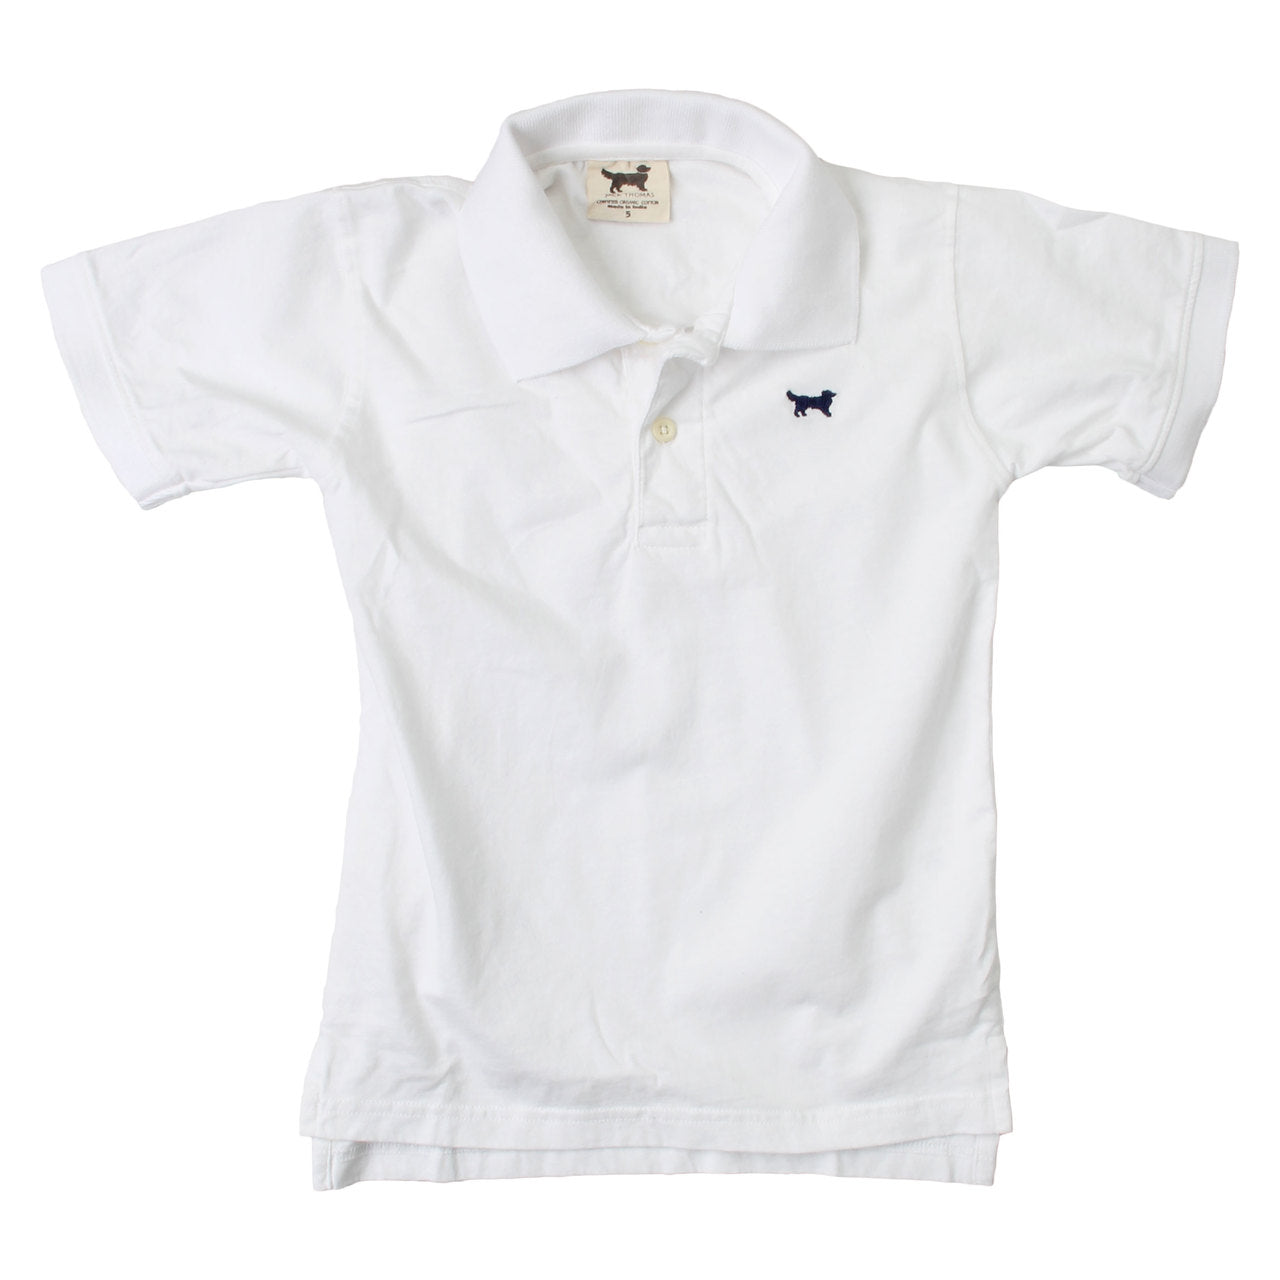 Jack Thomas  Youth Short Sleeve Jersey Polo-White